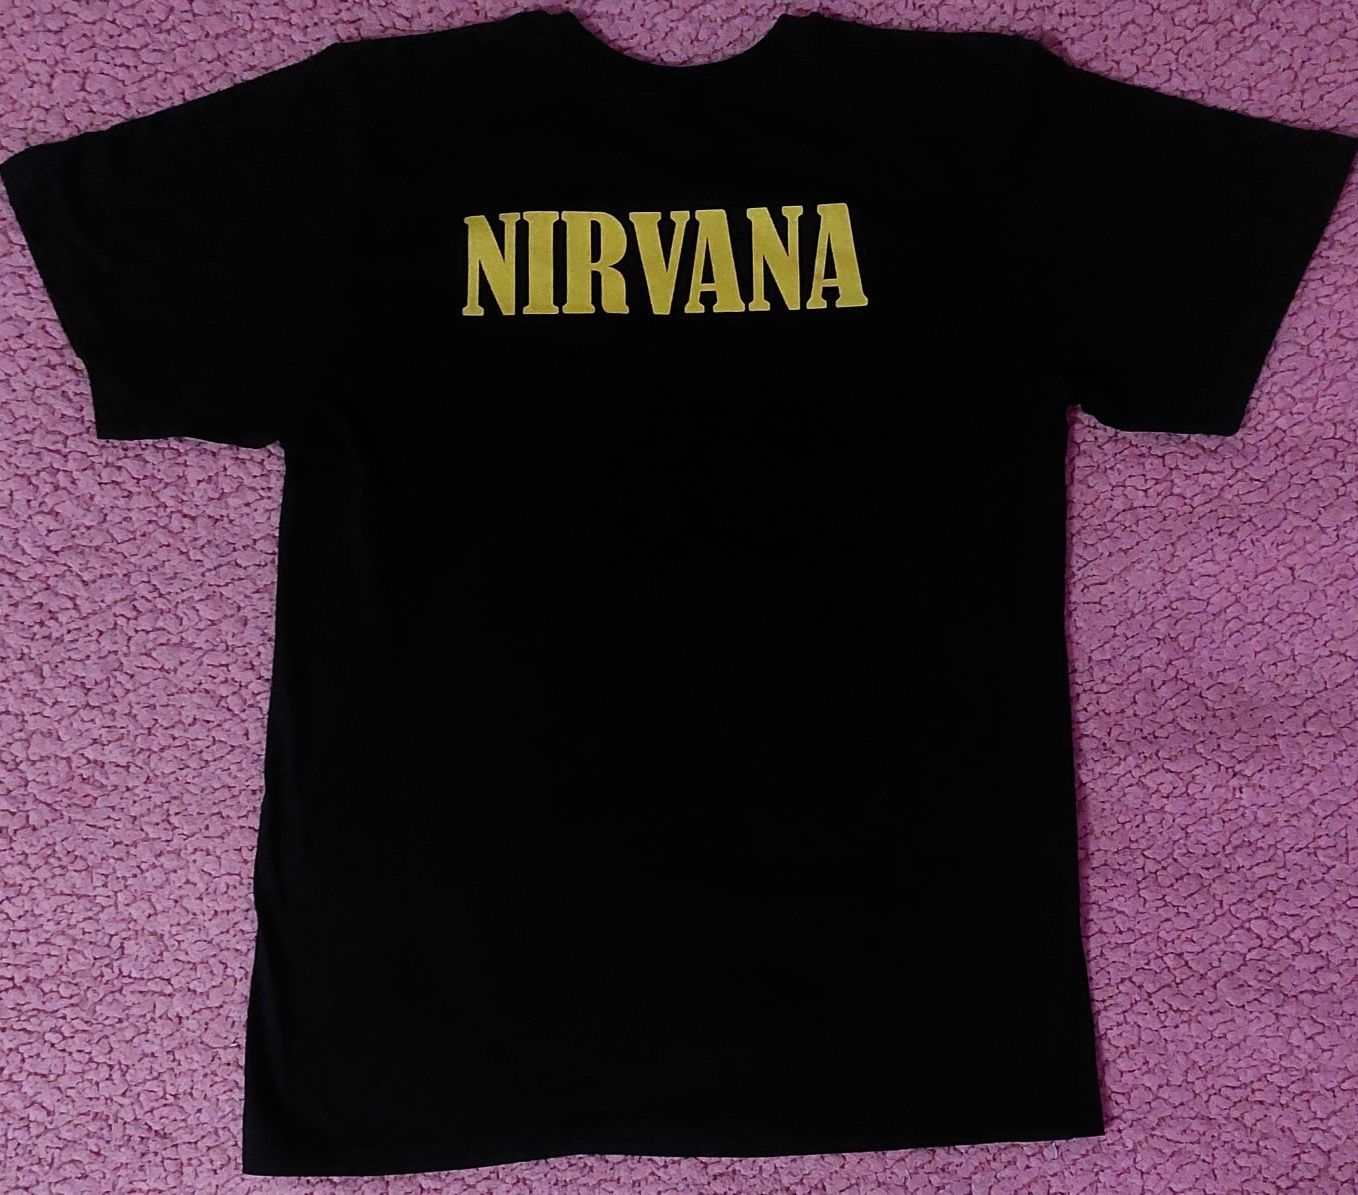 продается майка "Nirvana"